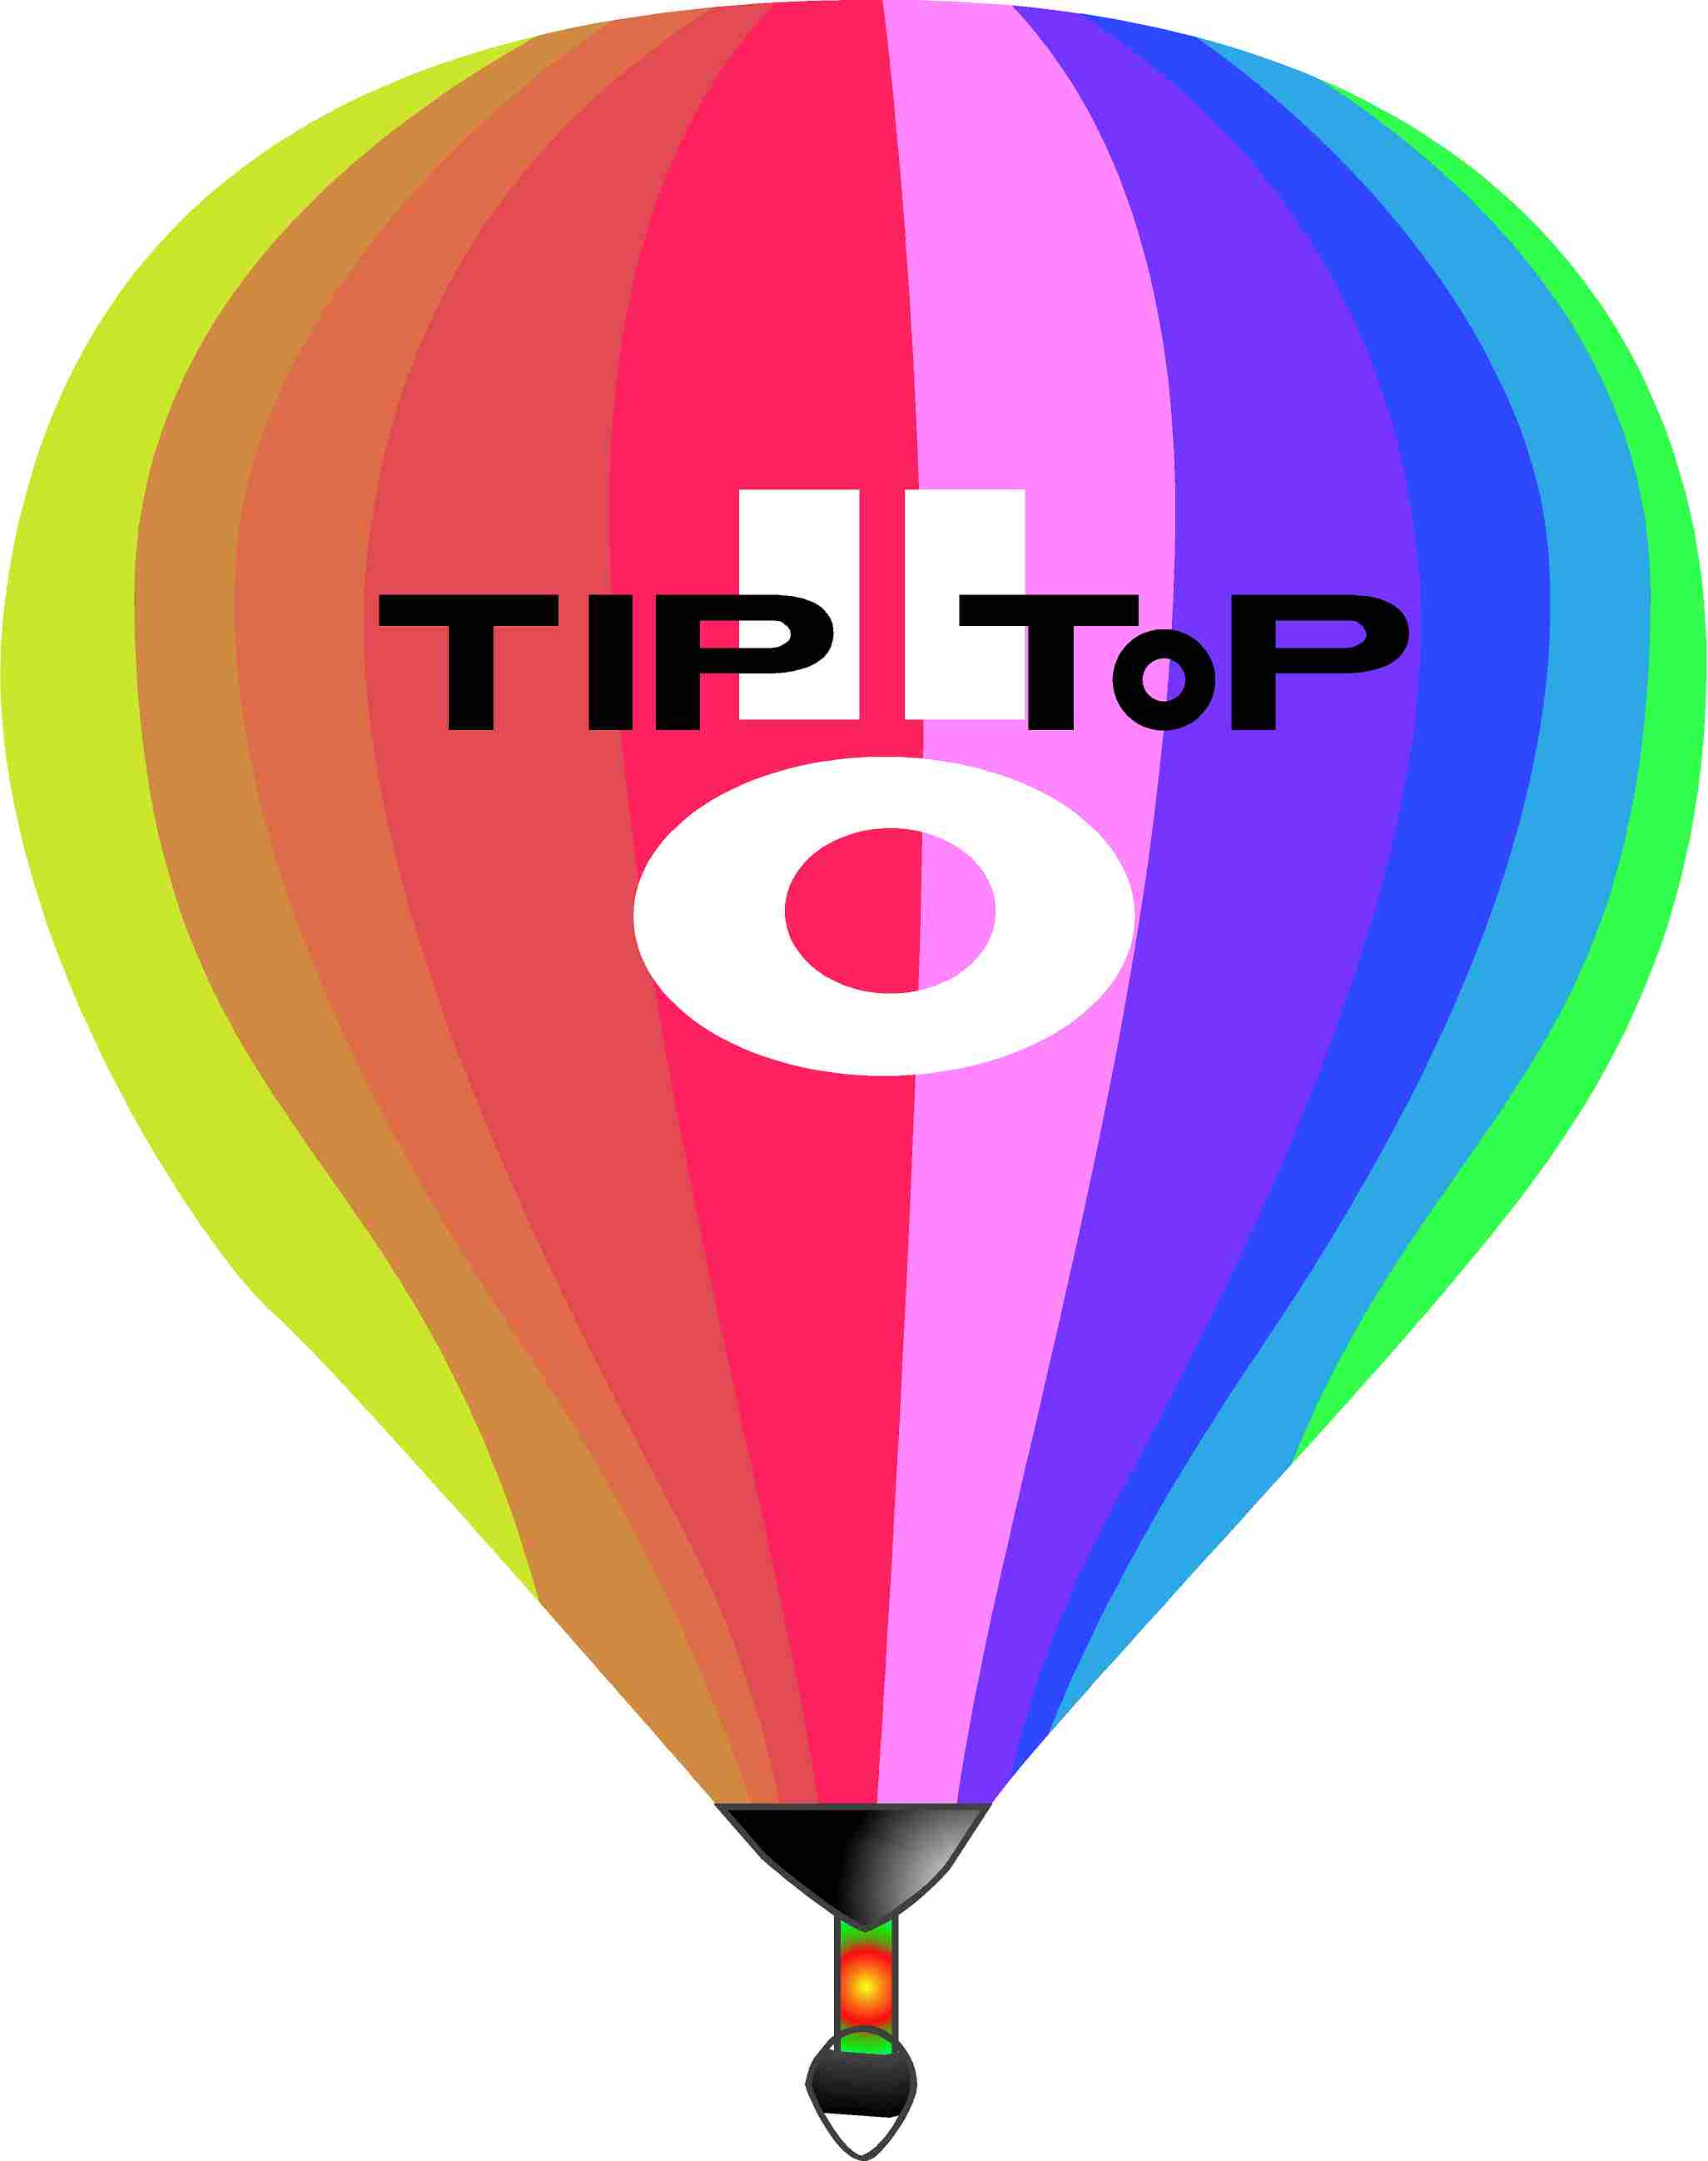 TipTop Media Management Ltd